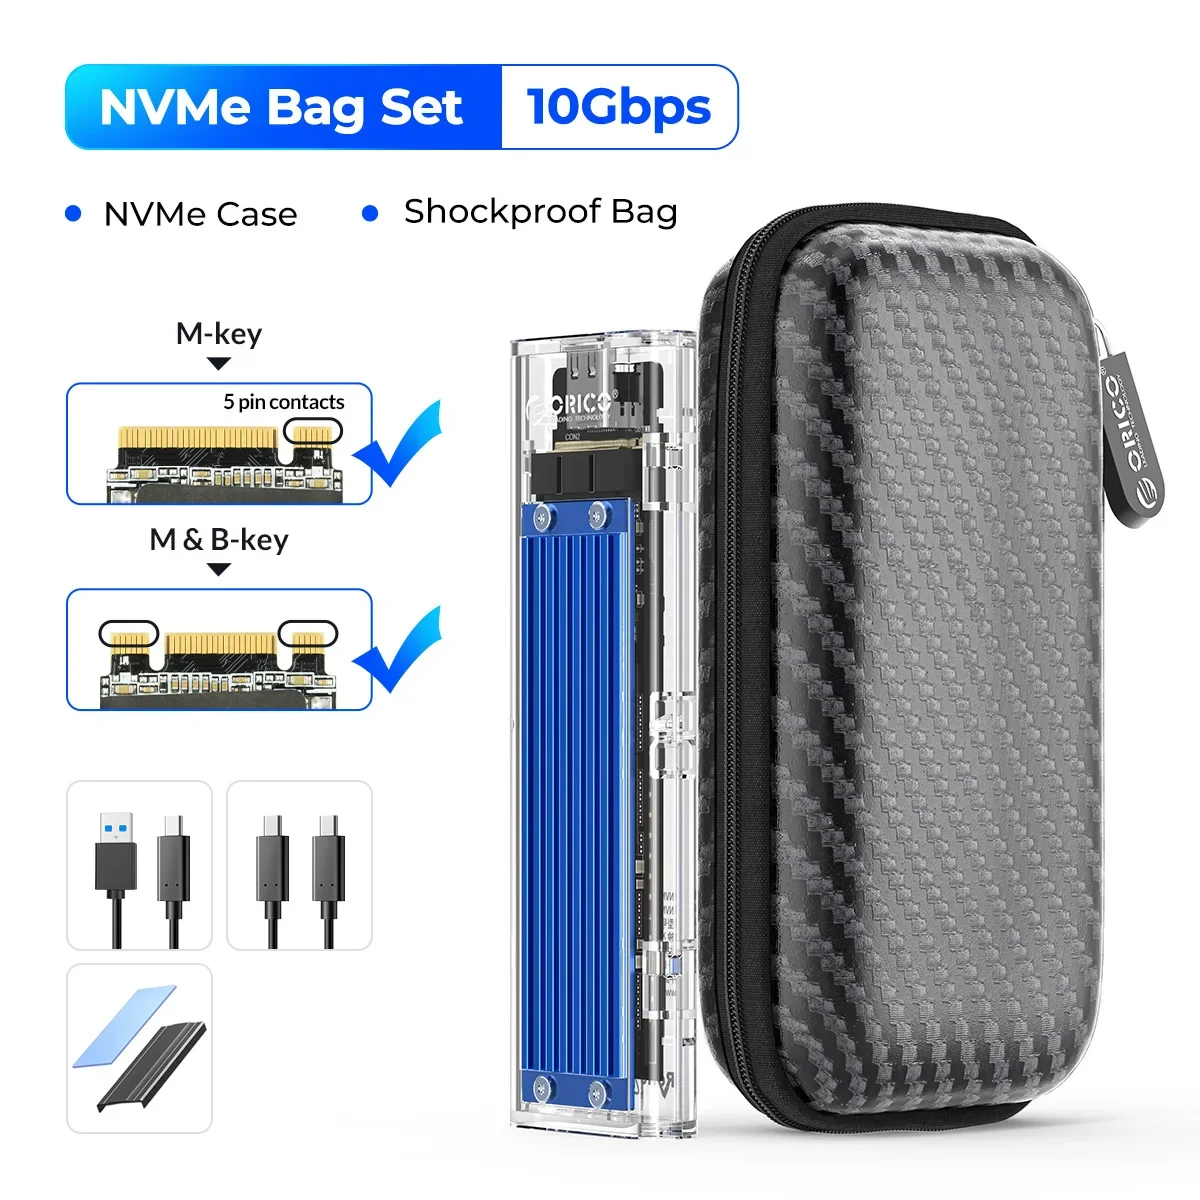 NVME Bag Set -10Gbps